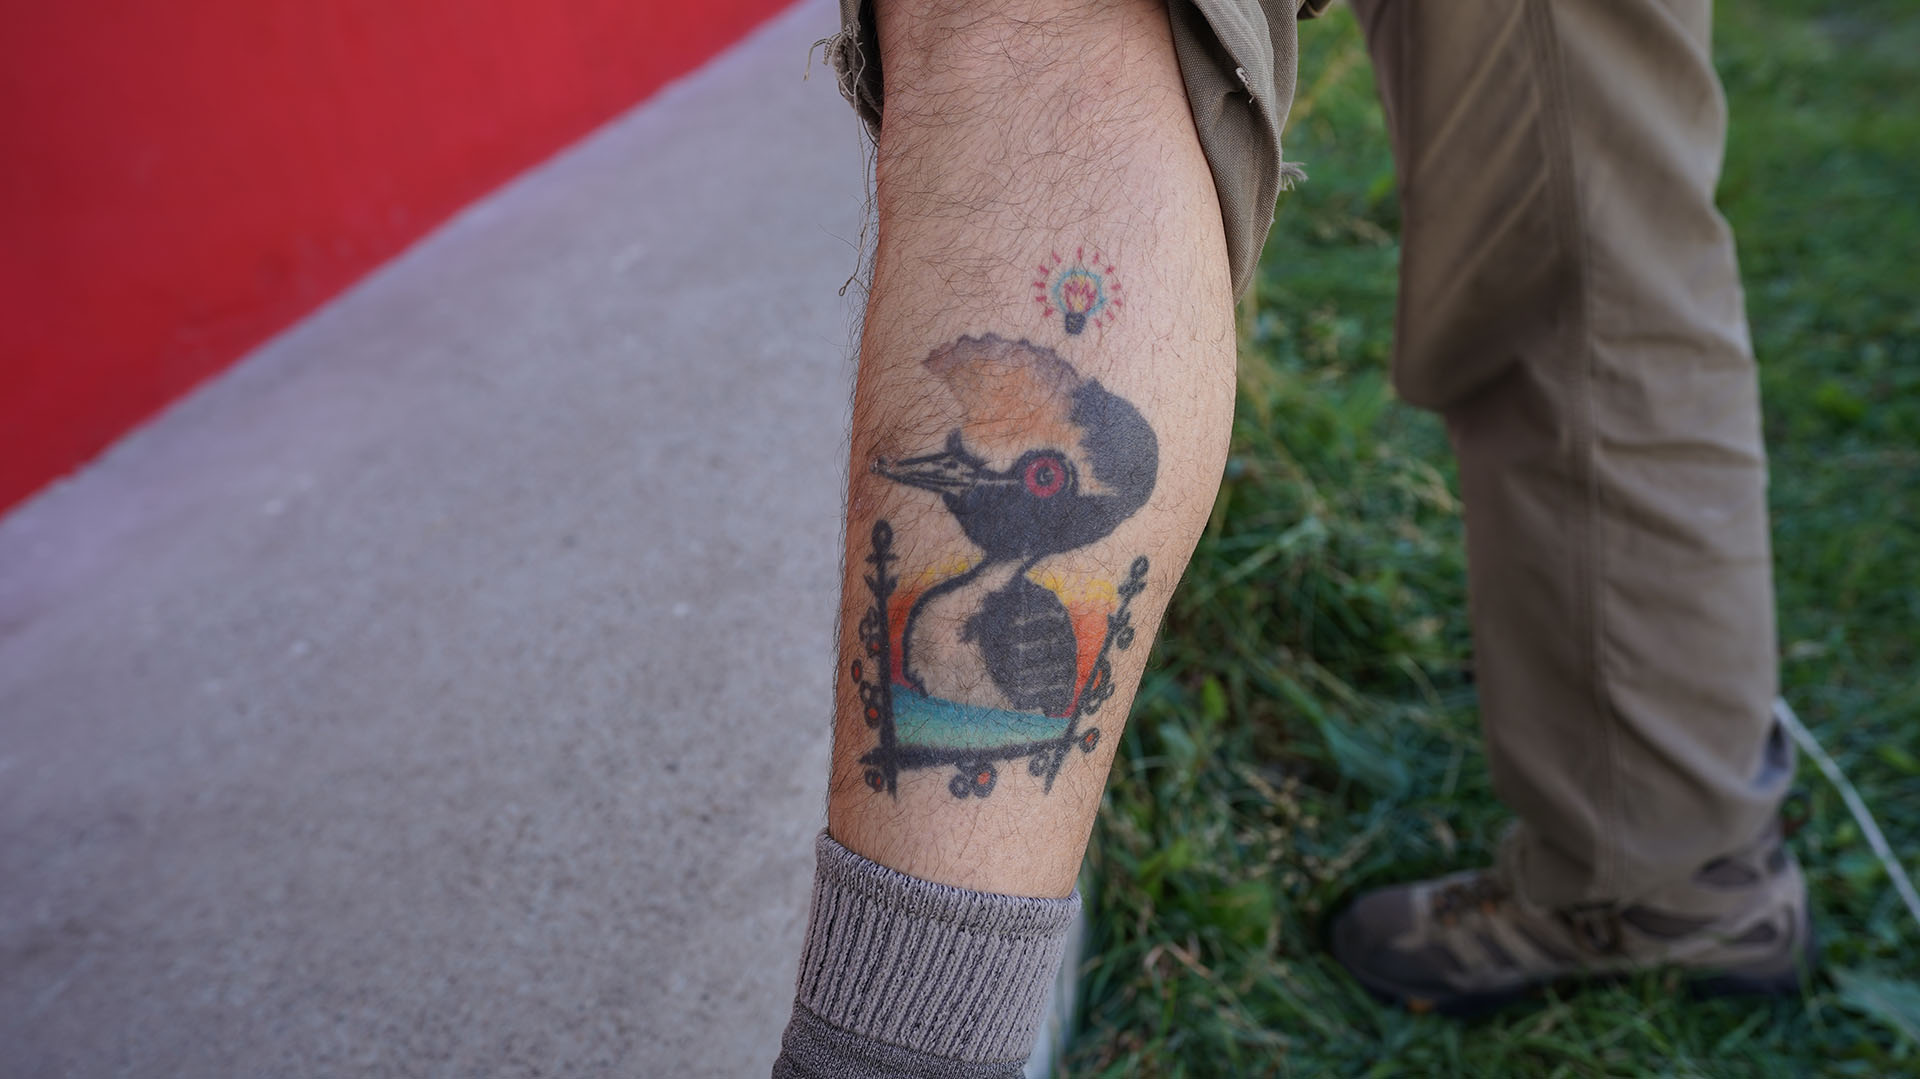 Kini tiene tatuado a un Macá Tobiano, la especie por la cual vive para recuperar